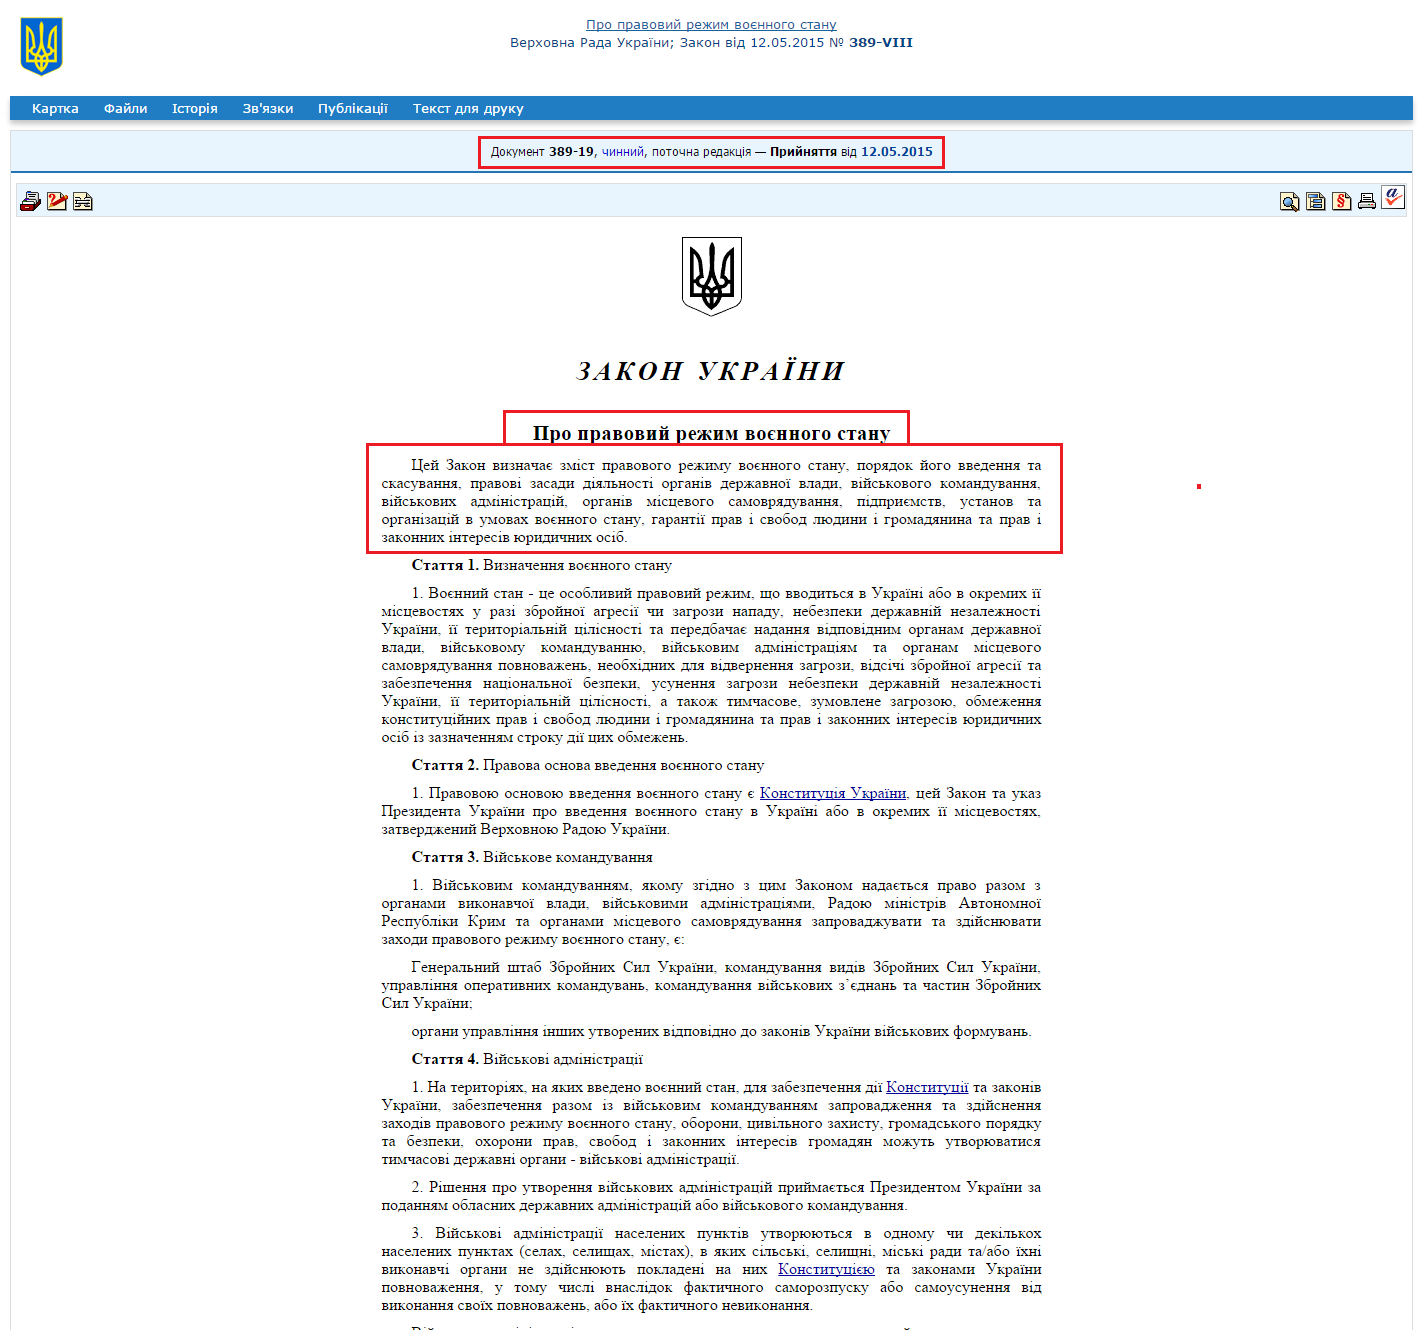 http://zakon4.rada.gov.ua/laws/show/389-19